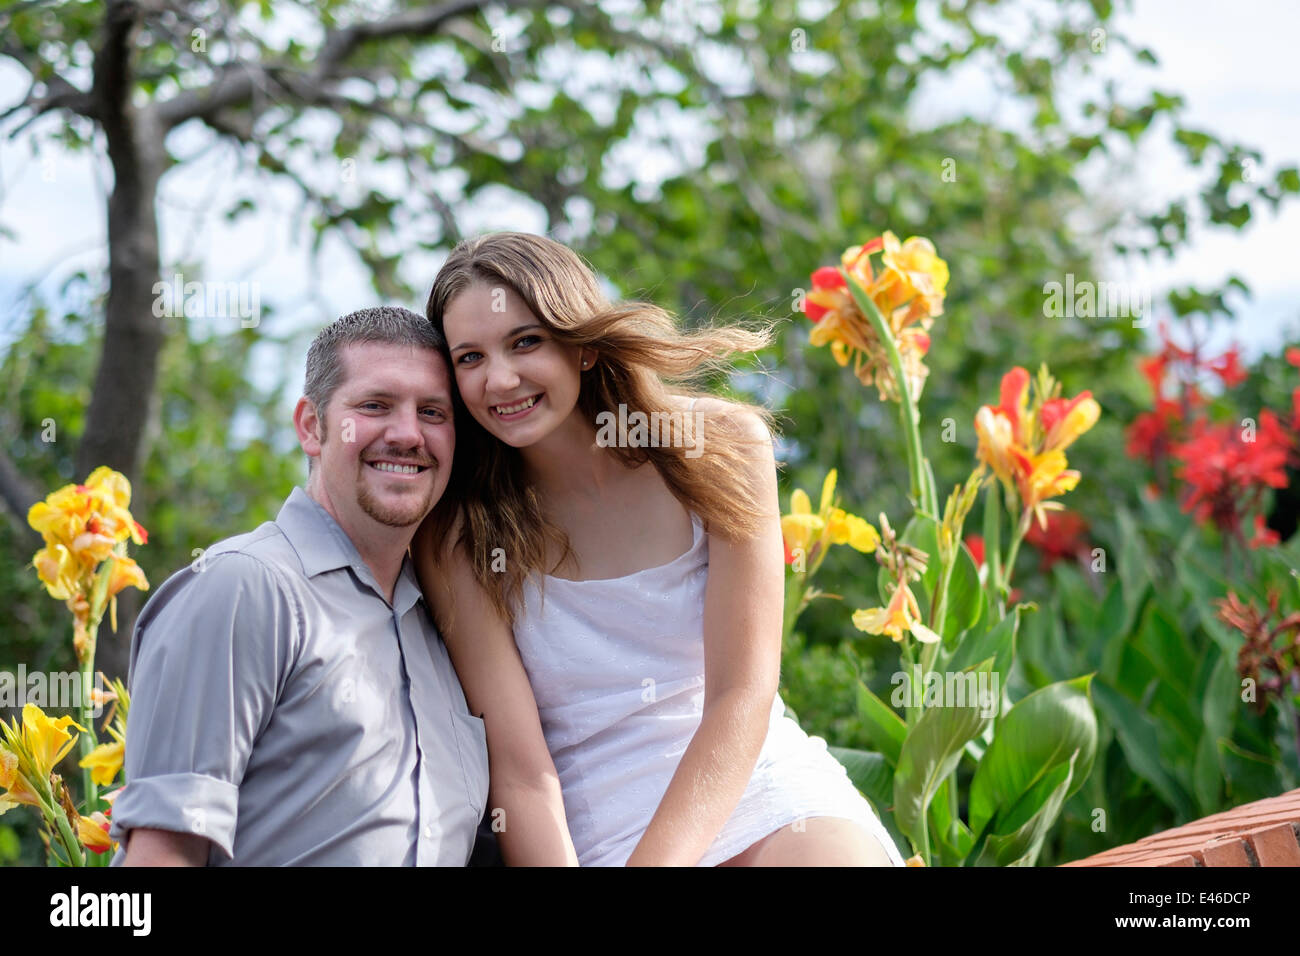 Ein glückliches, liebevolles Paar in ihrem 20s für Engagement Bilder in einem wunderschönen Park, umgeben von bunten blühende Schwertlilien darstellen. USA. Stockfoto